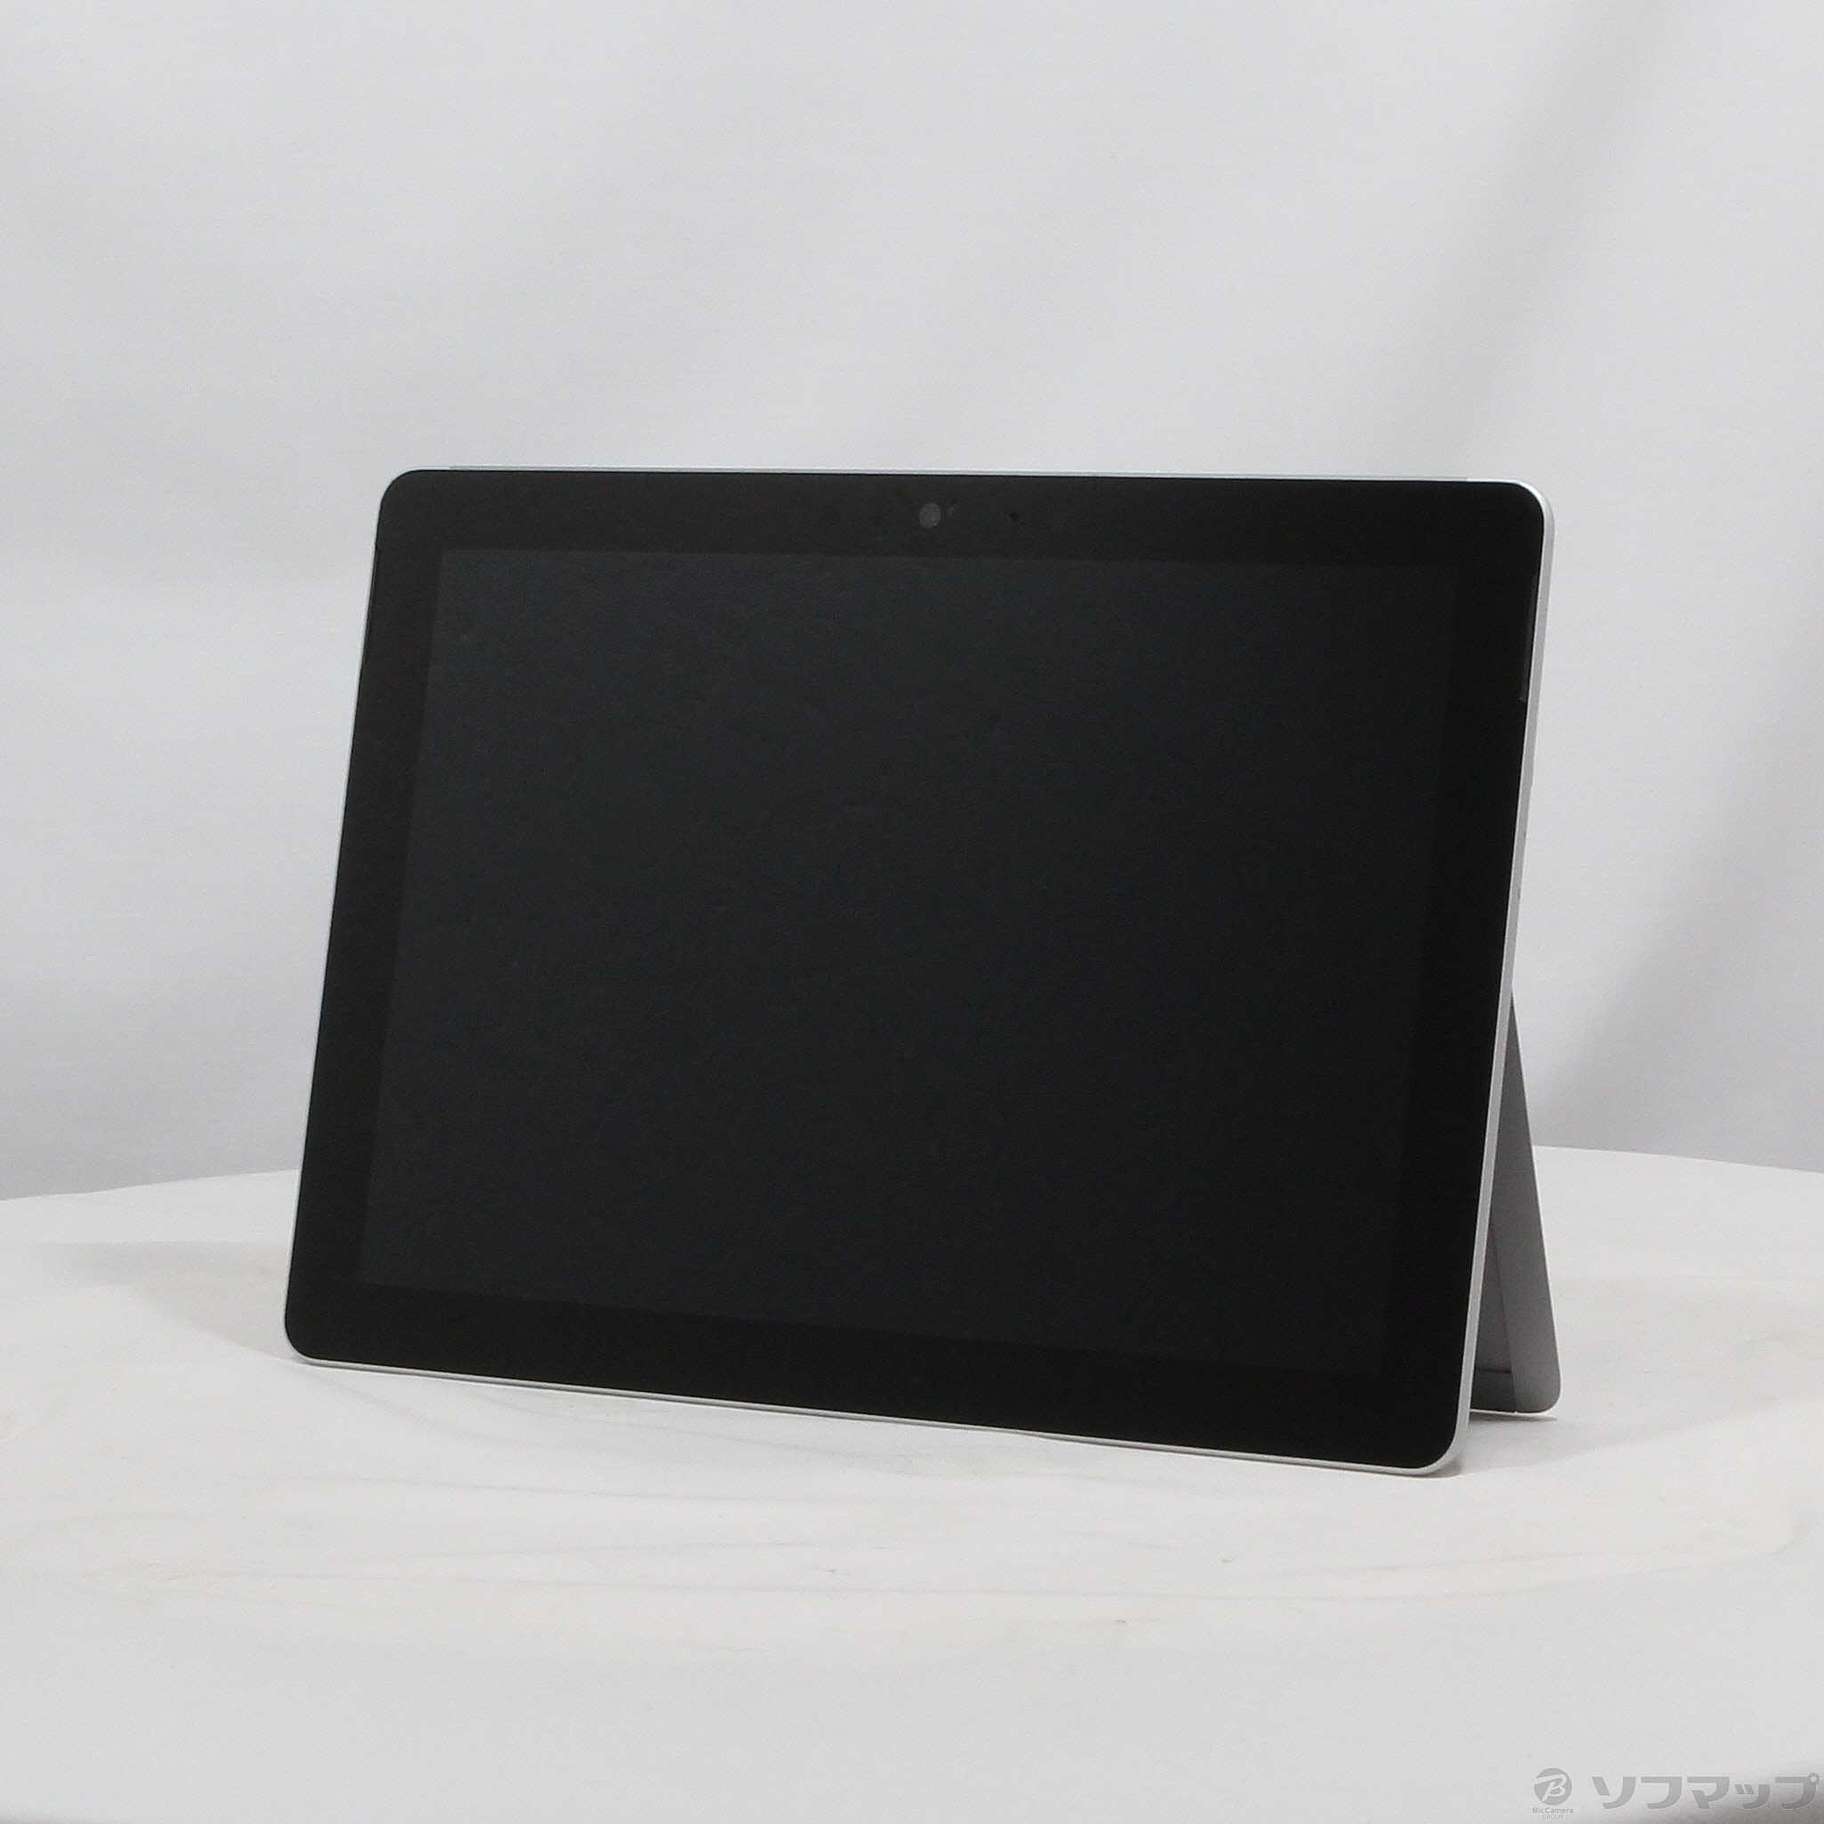 Surface Go (128GB/8GB) MCZ-00014